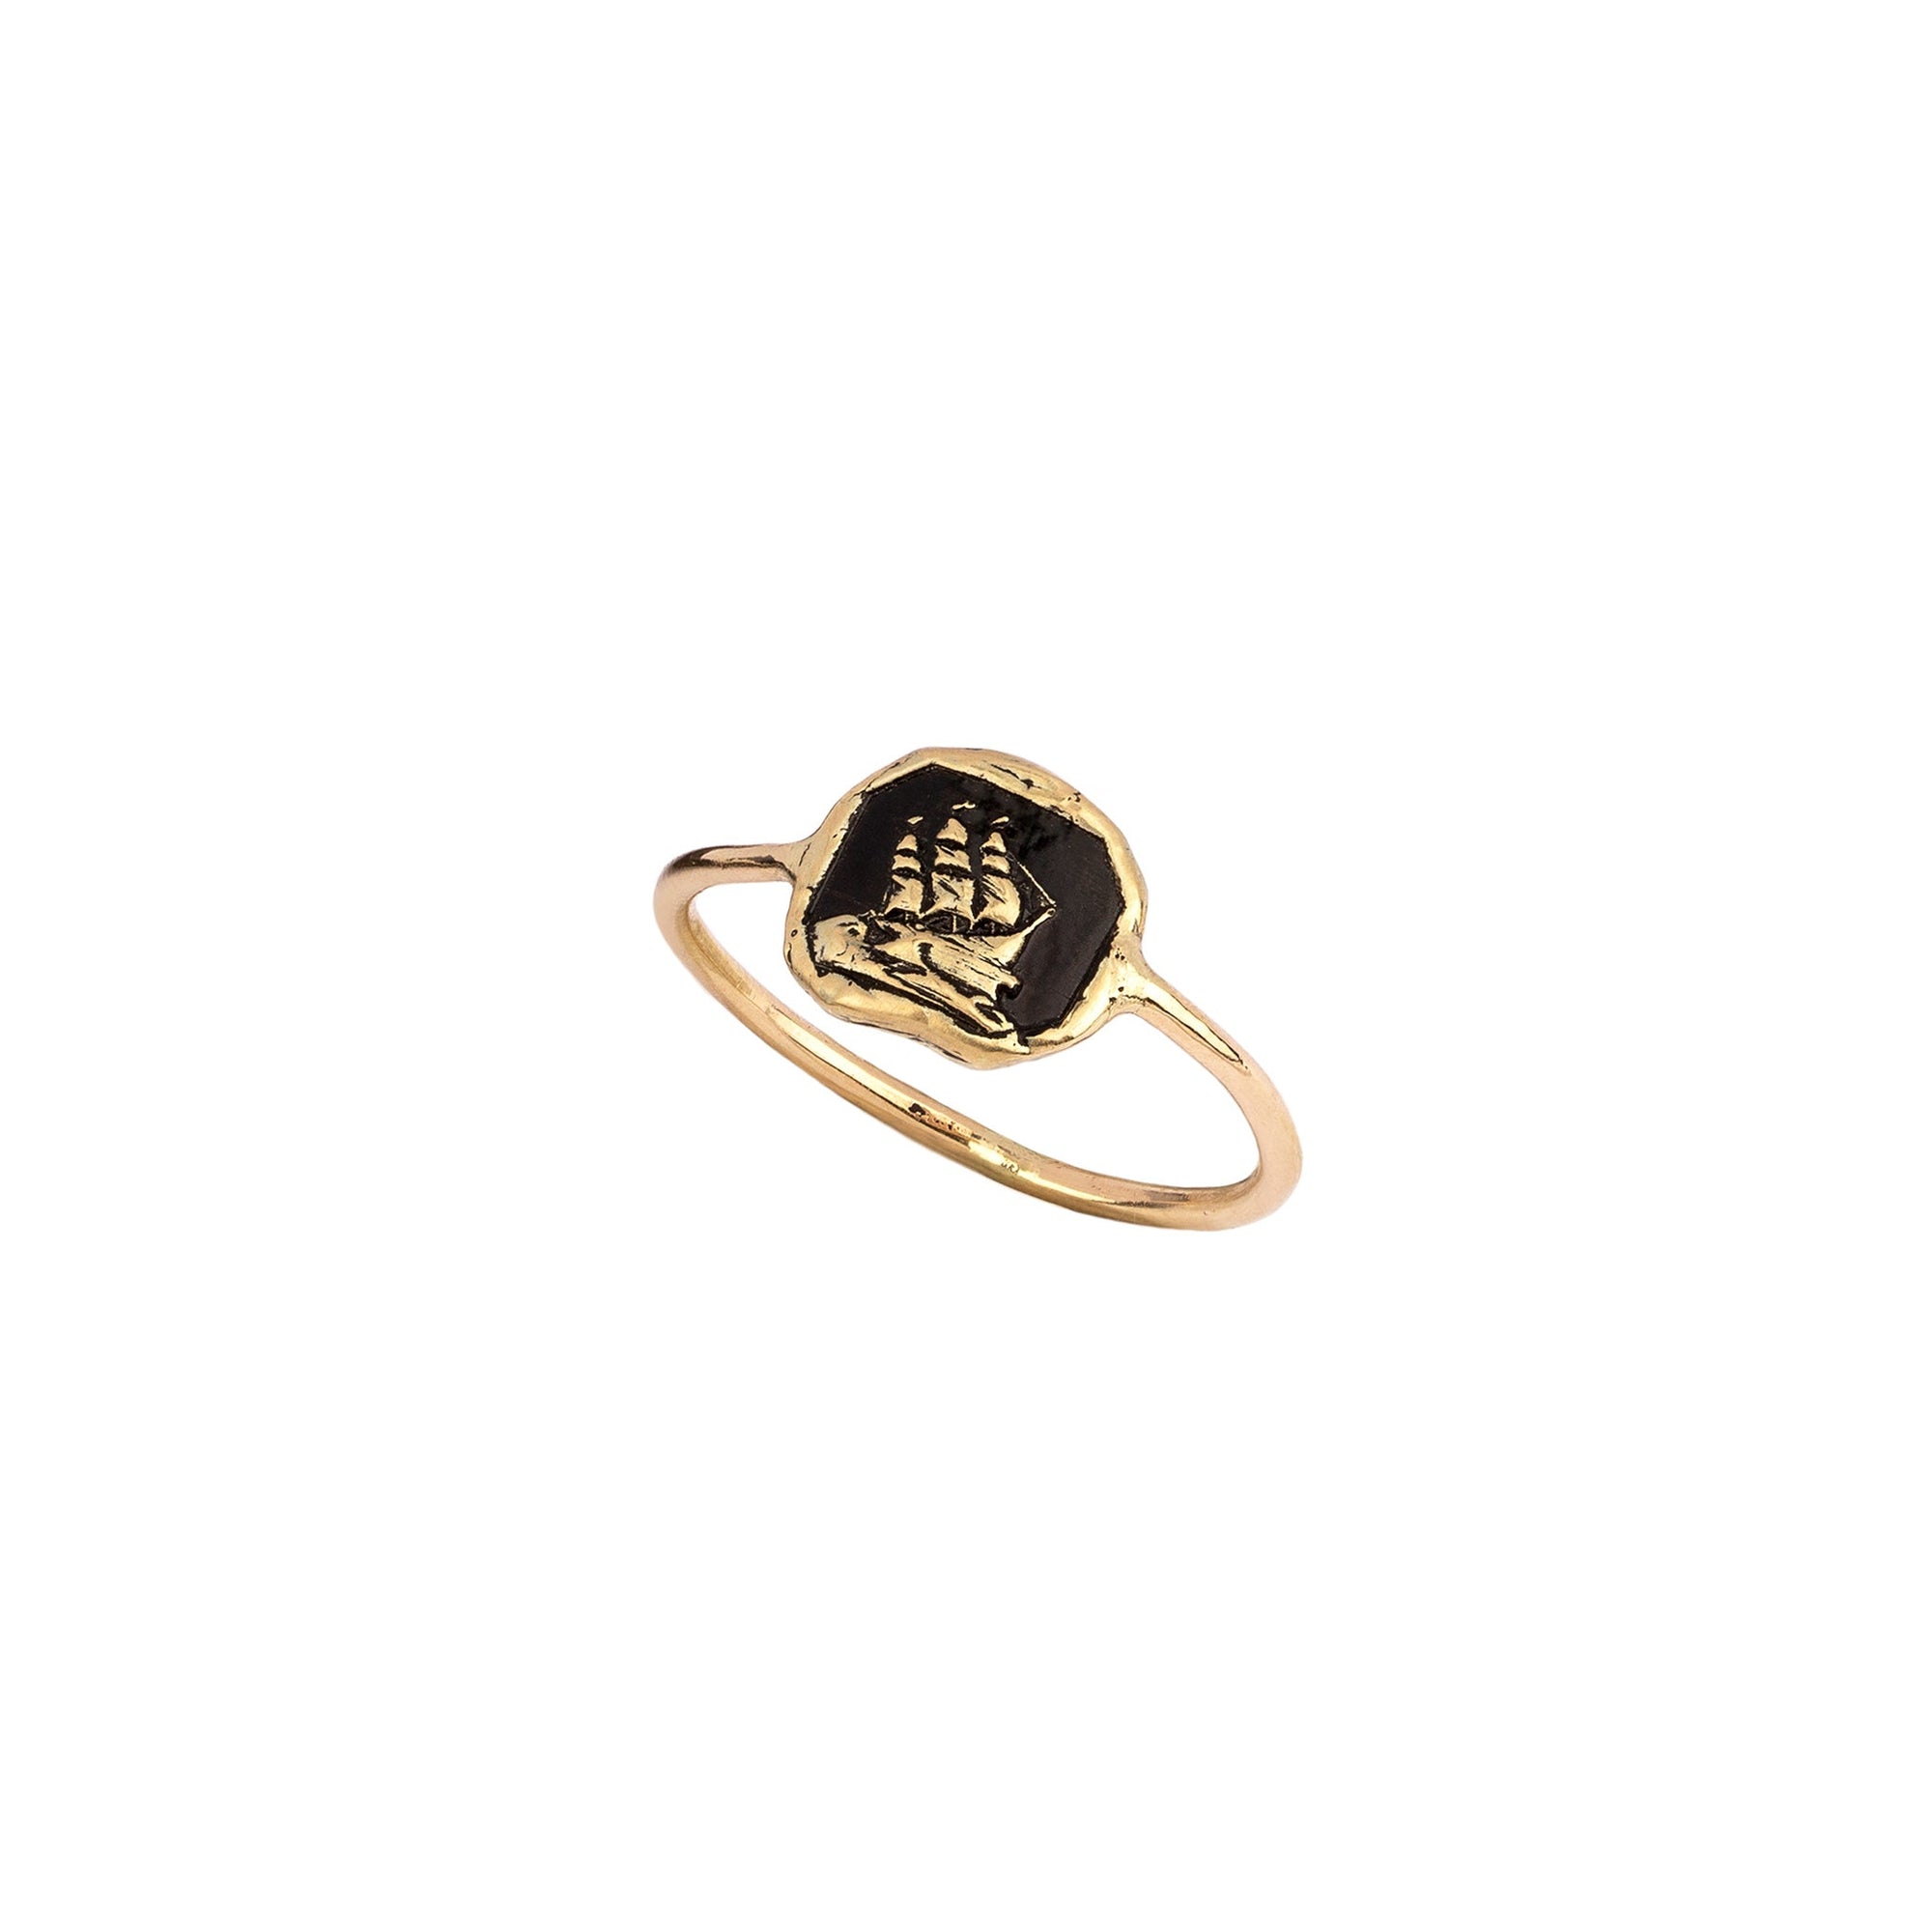 Unsinkable 14K Gold Mini Talisman Ring